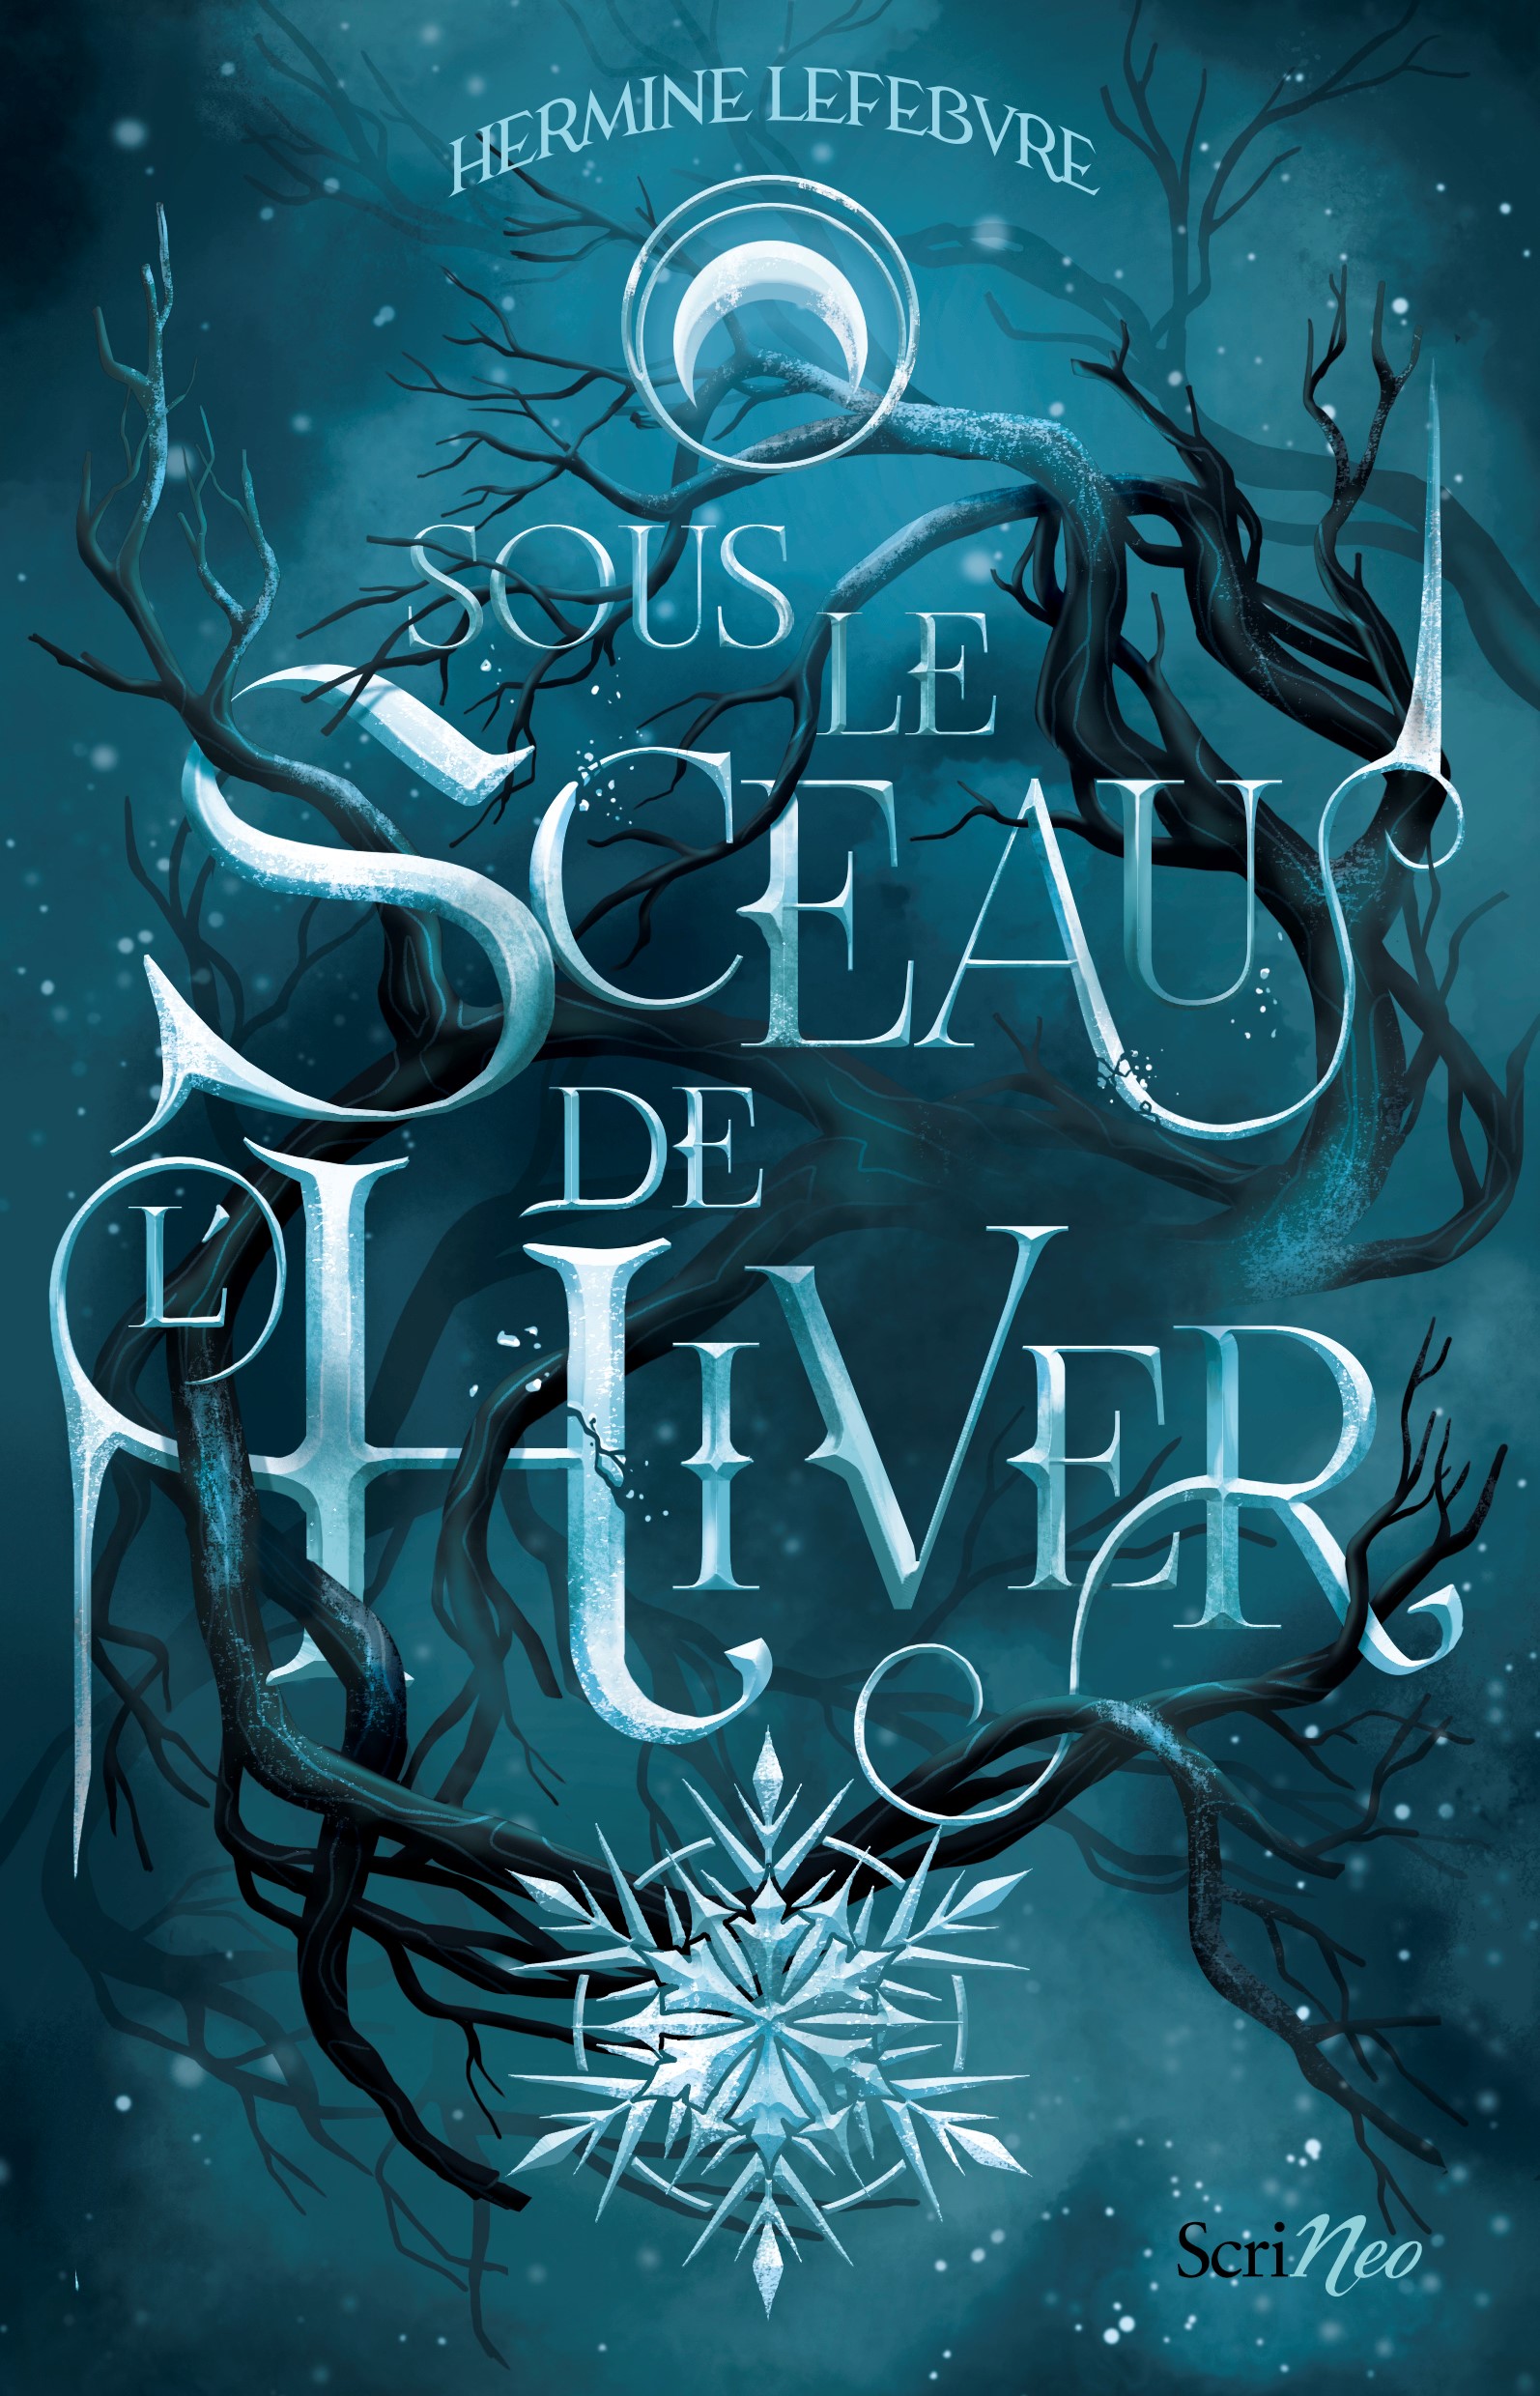 Couverture du roman "Sous le sceau de l'Hiver", représentant des branches noires couvertes de givre sur fond nocturne. Un grand flocon pend sous le titre qui semble pris dans la glace.